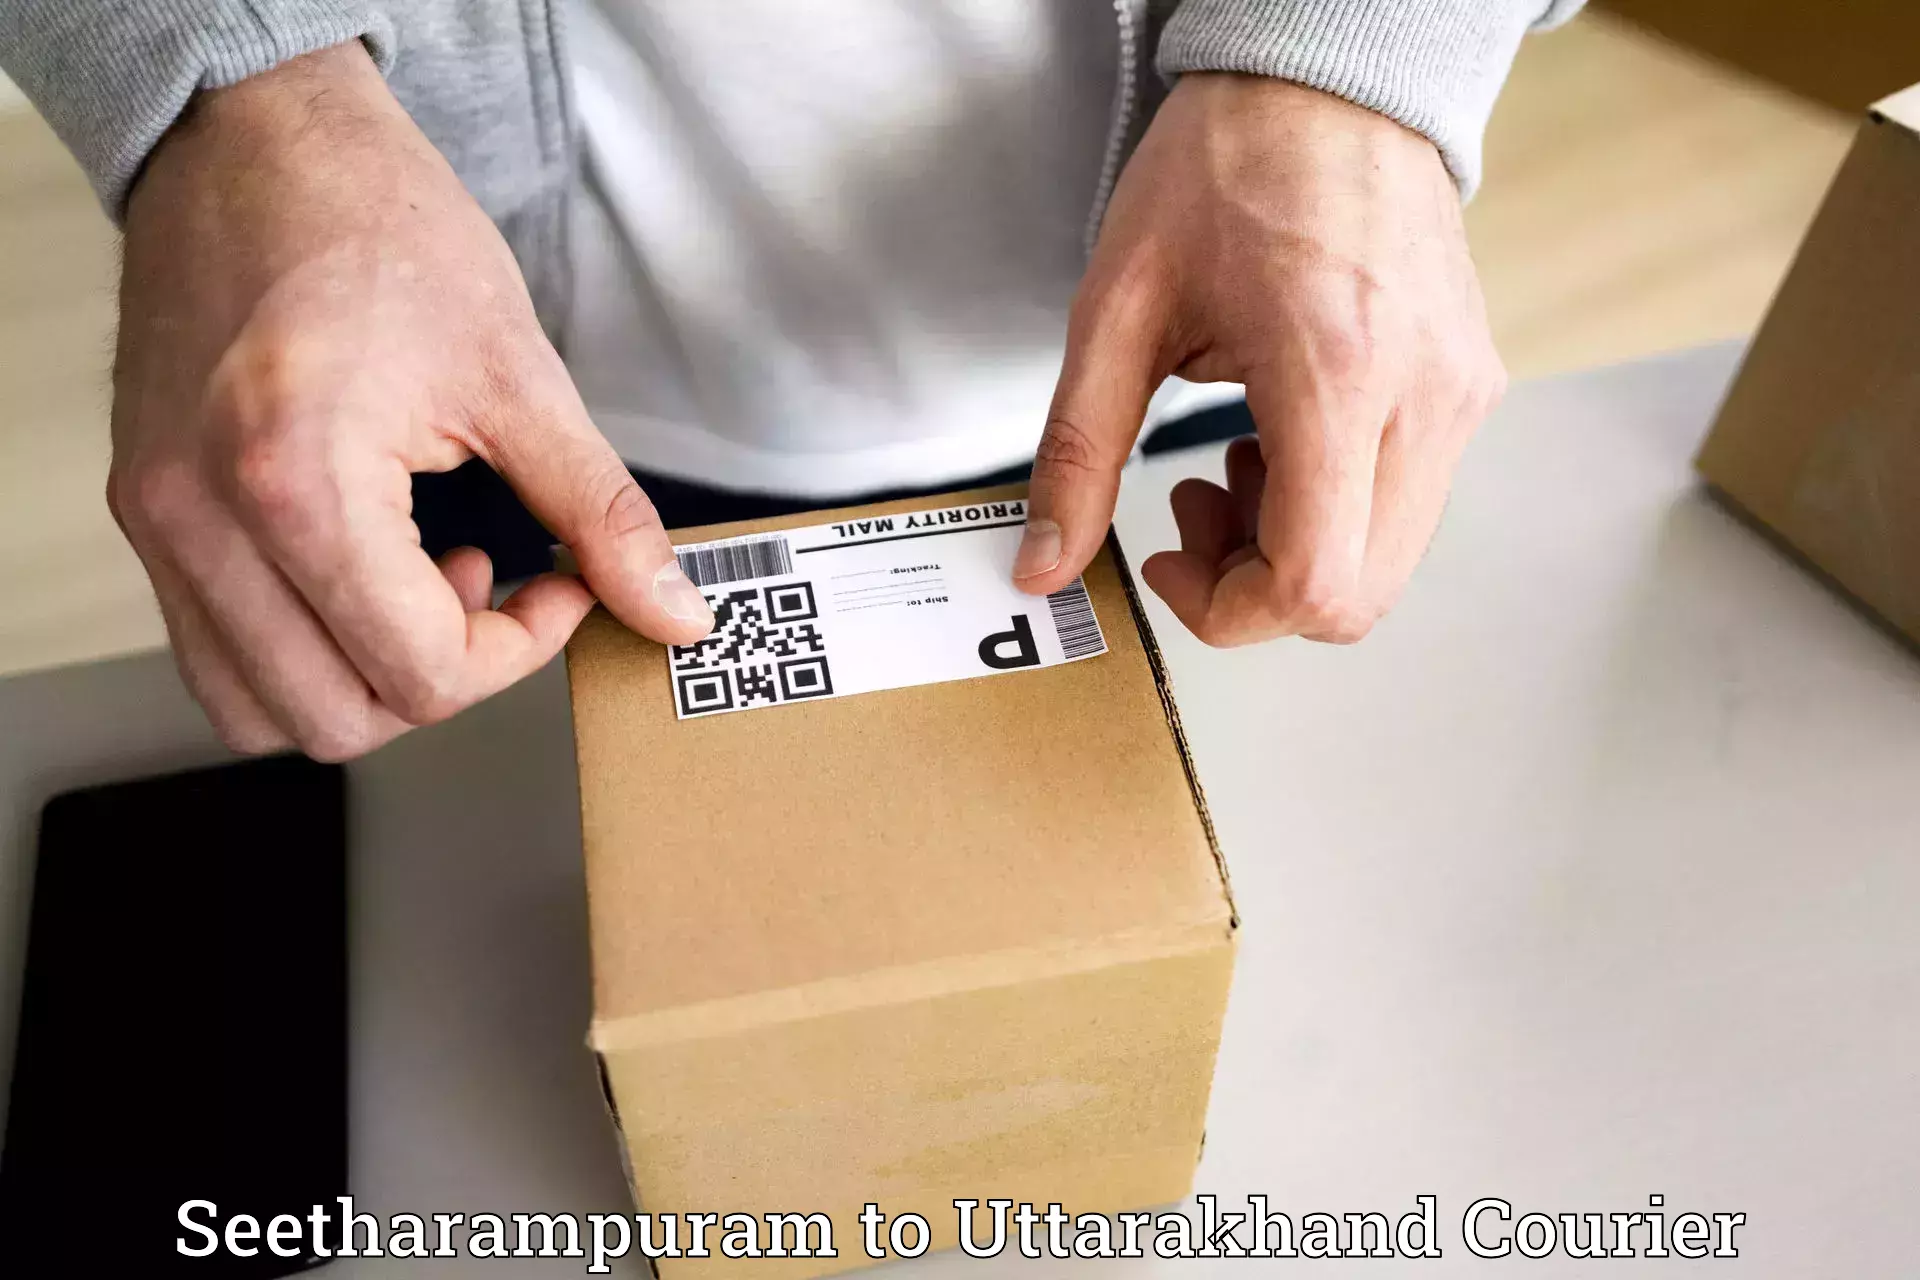 Package delivery network Seetharampuram to IIT Roorkee